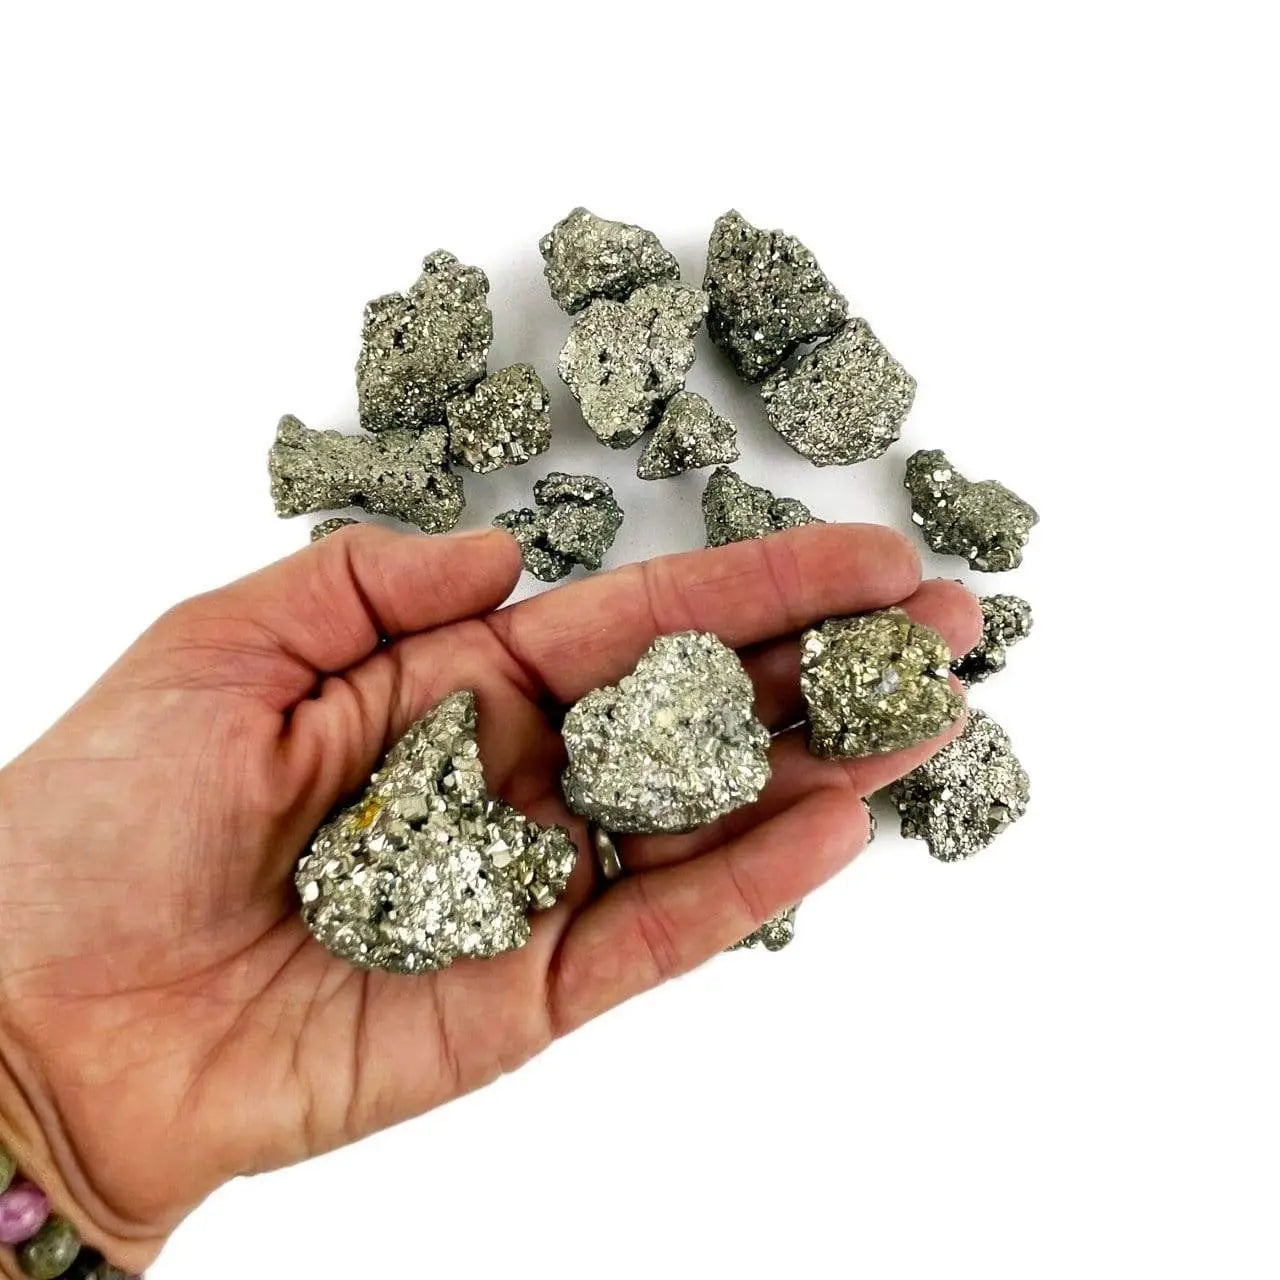 Rough Pyrite Stone - Medium